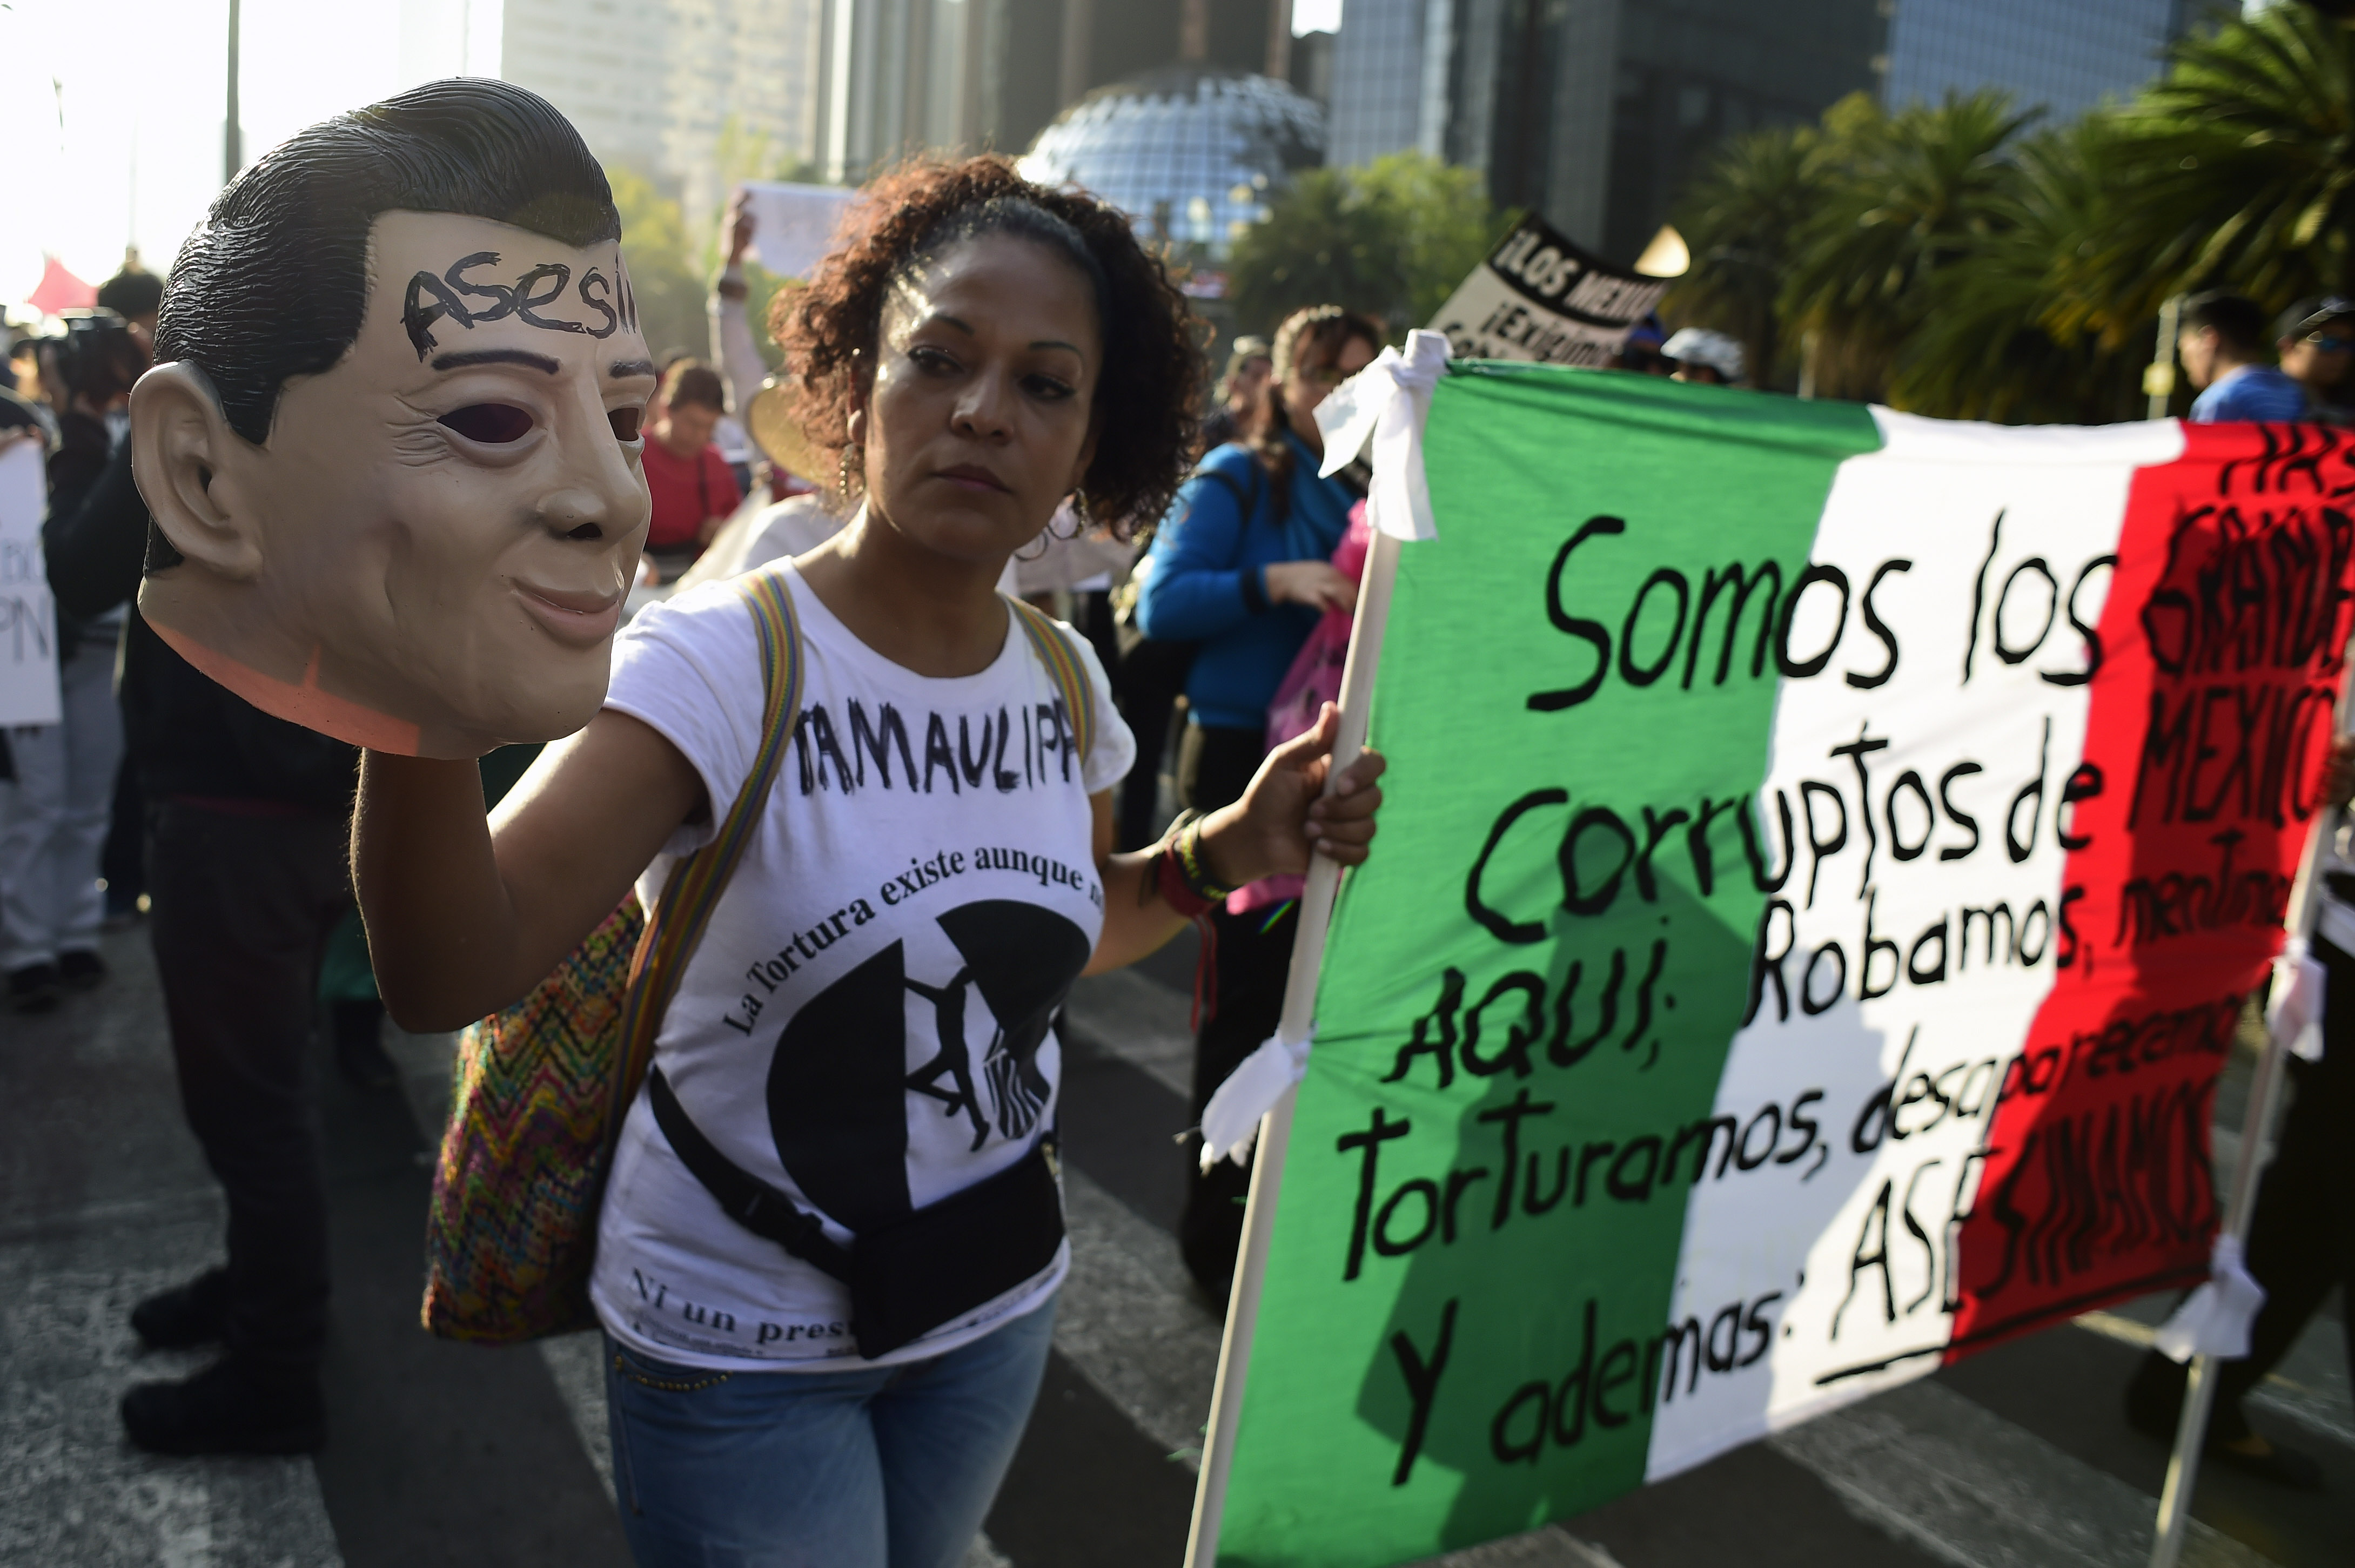 احتجاجات فى المكسيك تطالب باستقالة الرئيس المكسيكى إنريكه بينييا نييتو